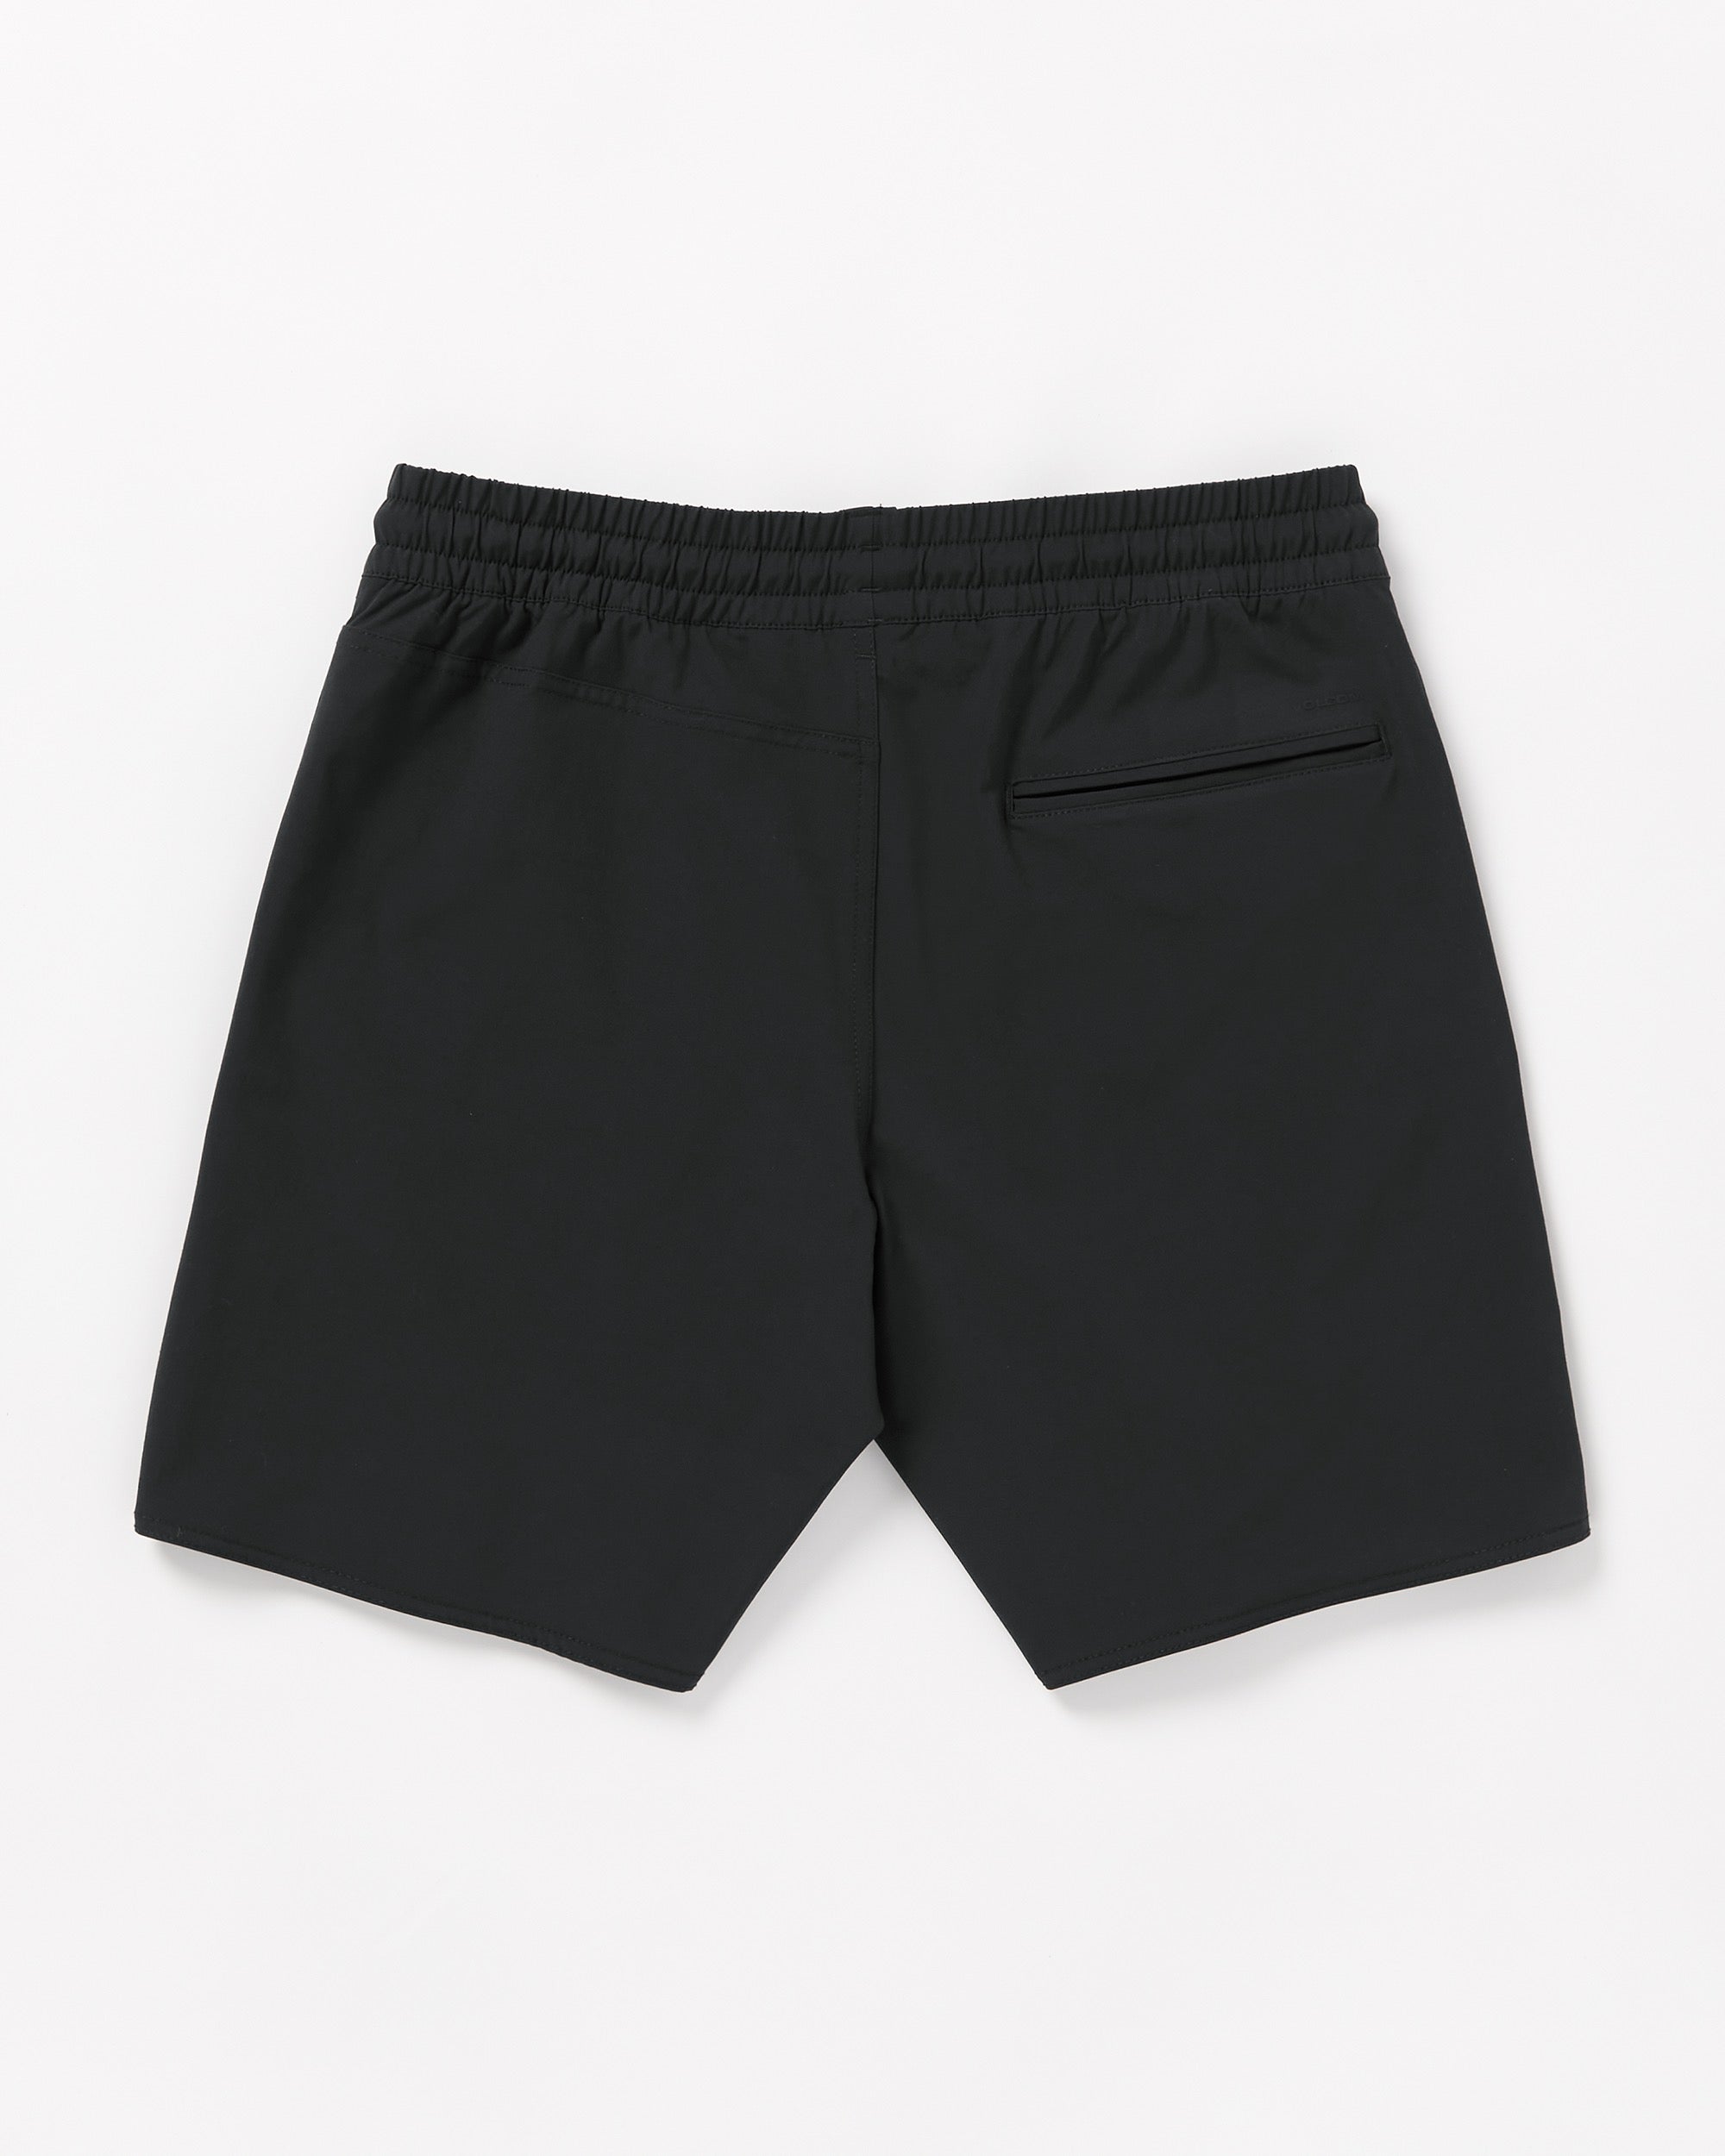 Nomoly Hybrid Shorts - Black